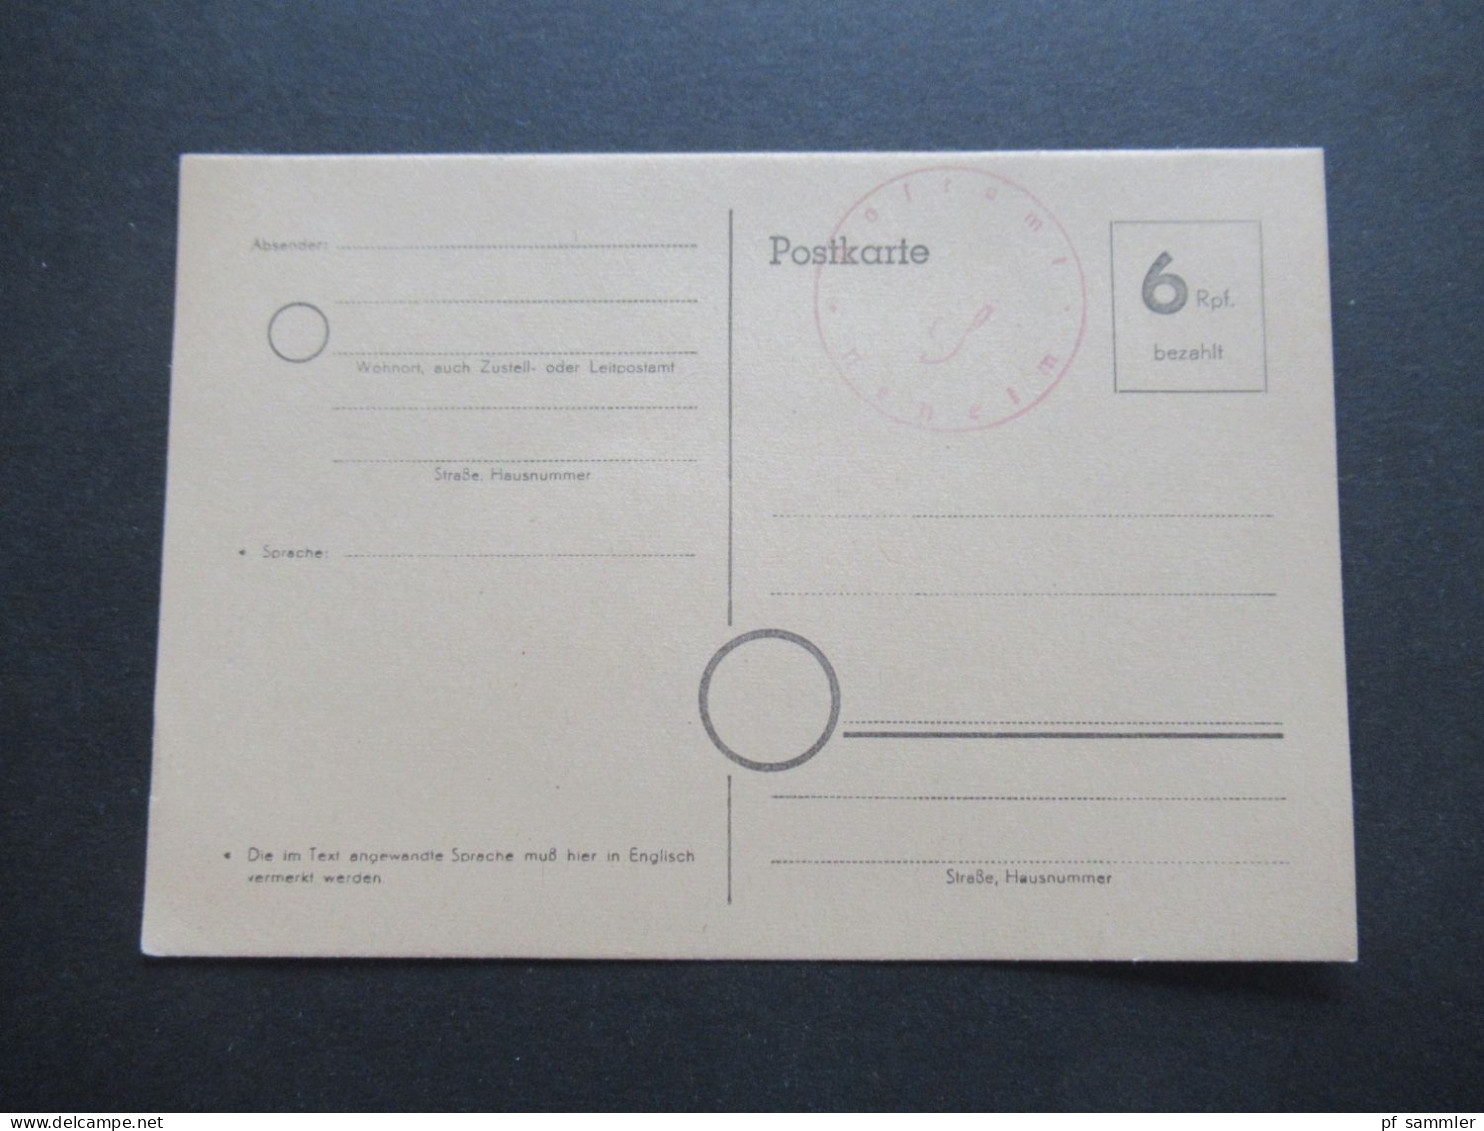 Bizone Behelfsausgabe Ganzsache 6 Rpf. Bezahlt Und Stempel Postamt Neheim / Ungebraucht / 1945 / 1946 - Emisiones Provisionales Zona Británica